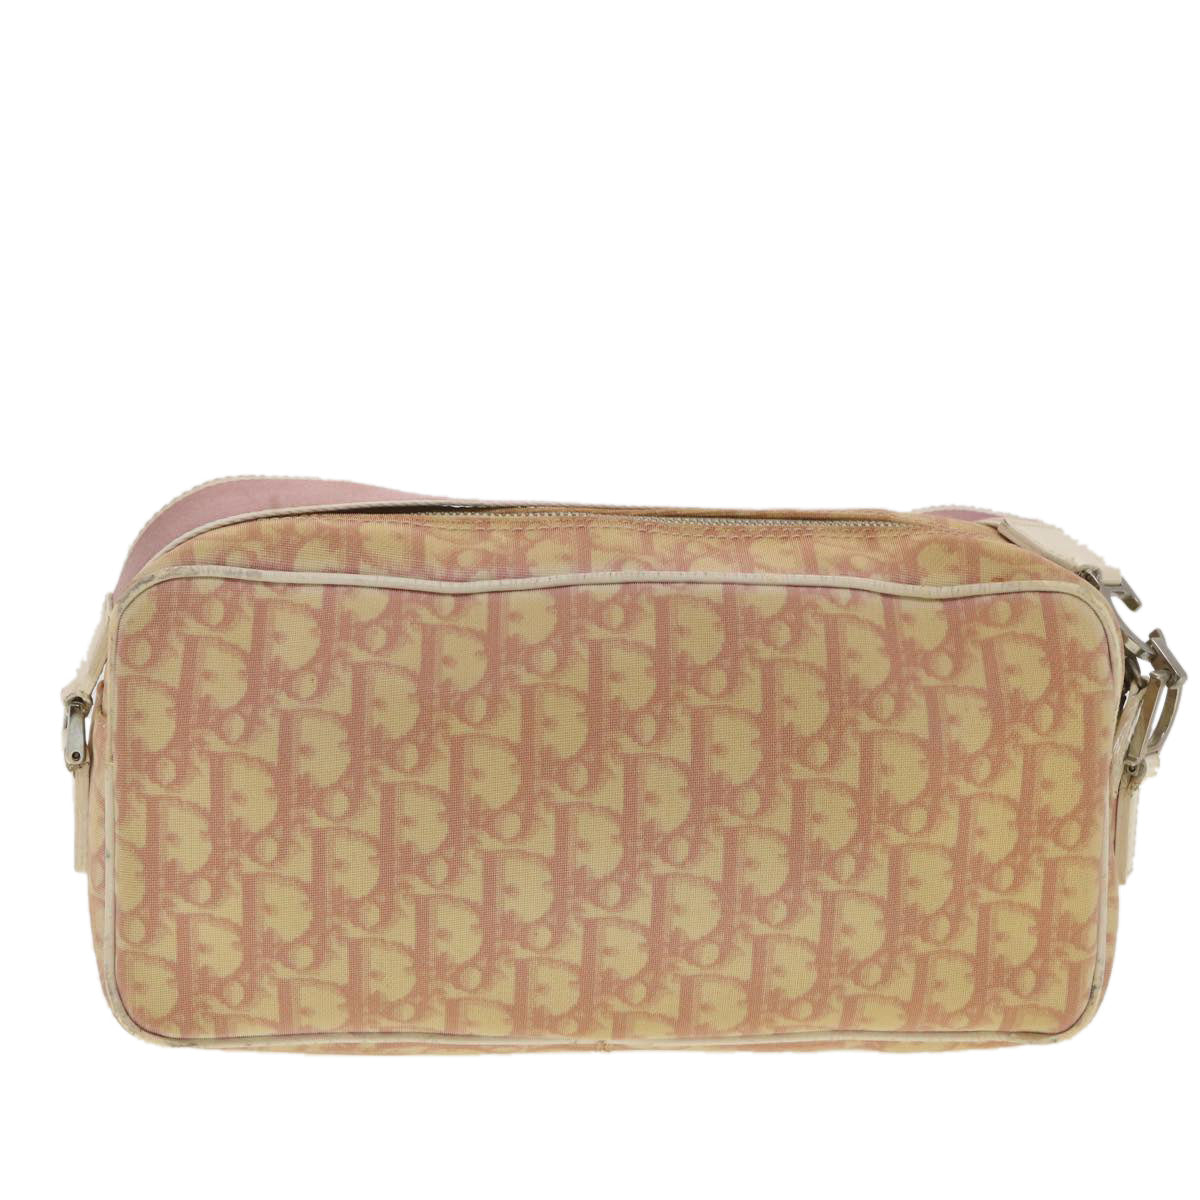 Christian Dior Trotter Canvas Shoulder Bag Pink Auth 37506 - 0